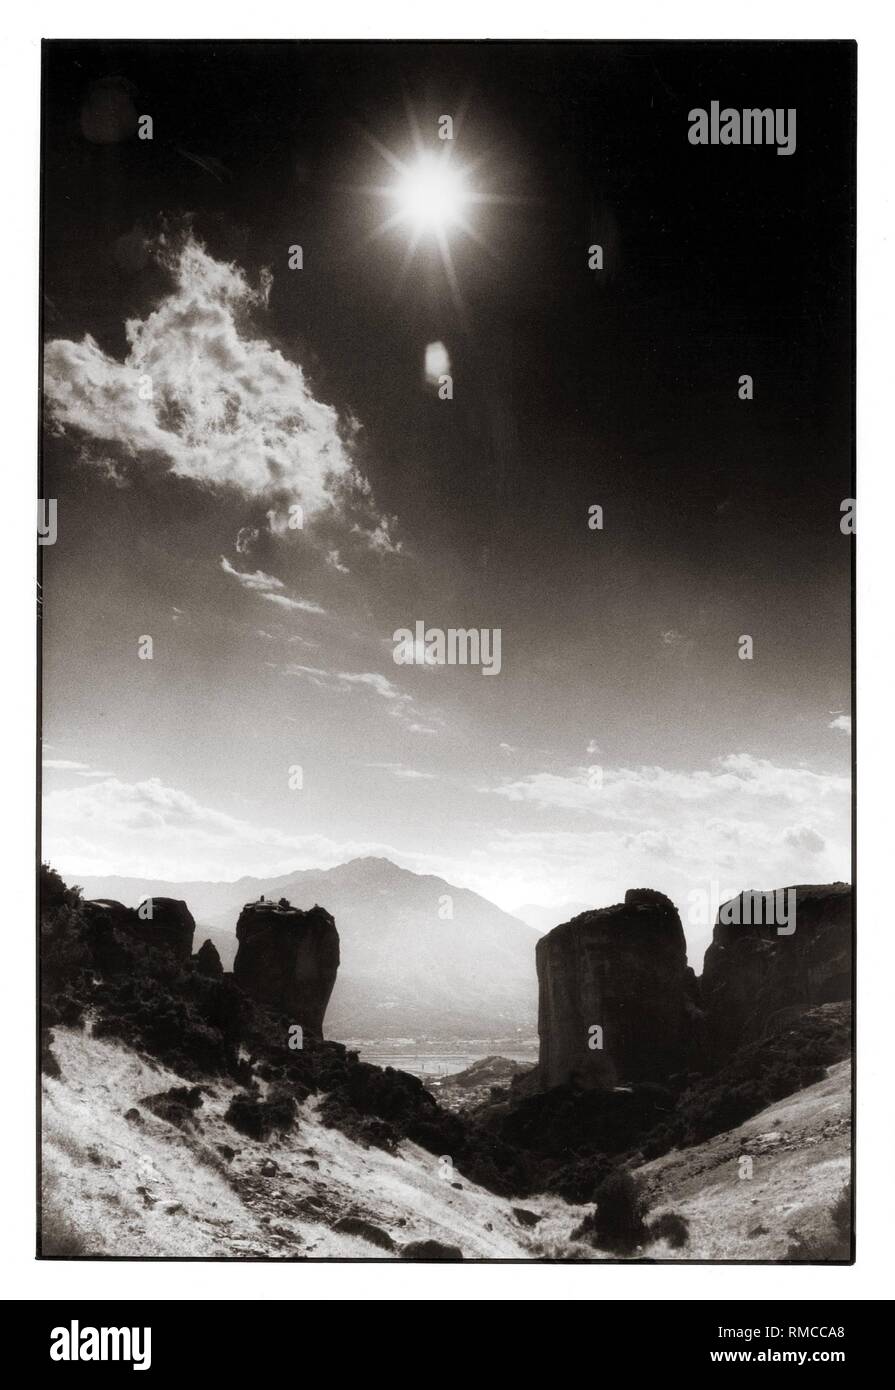 Vacanze in Grecia, il paesaggio in Tessaglia, Meteora, 1988. Il Greco monasteri ortodossi sono situati tra i quasi inaccessibile formazioni rocciose. I monasteri di Meteora sono parte del Patrimonio Culturale Mondiale dell'UNESCO. Settembre 1988. Foto Stock